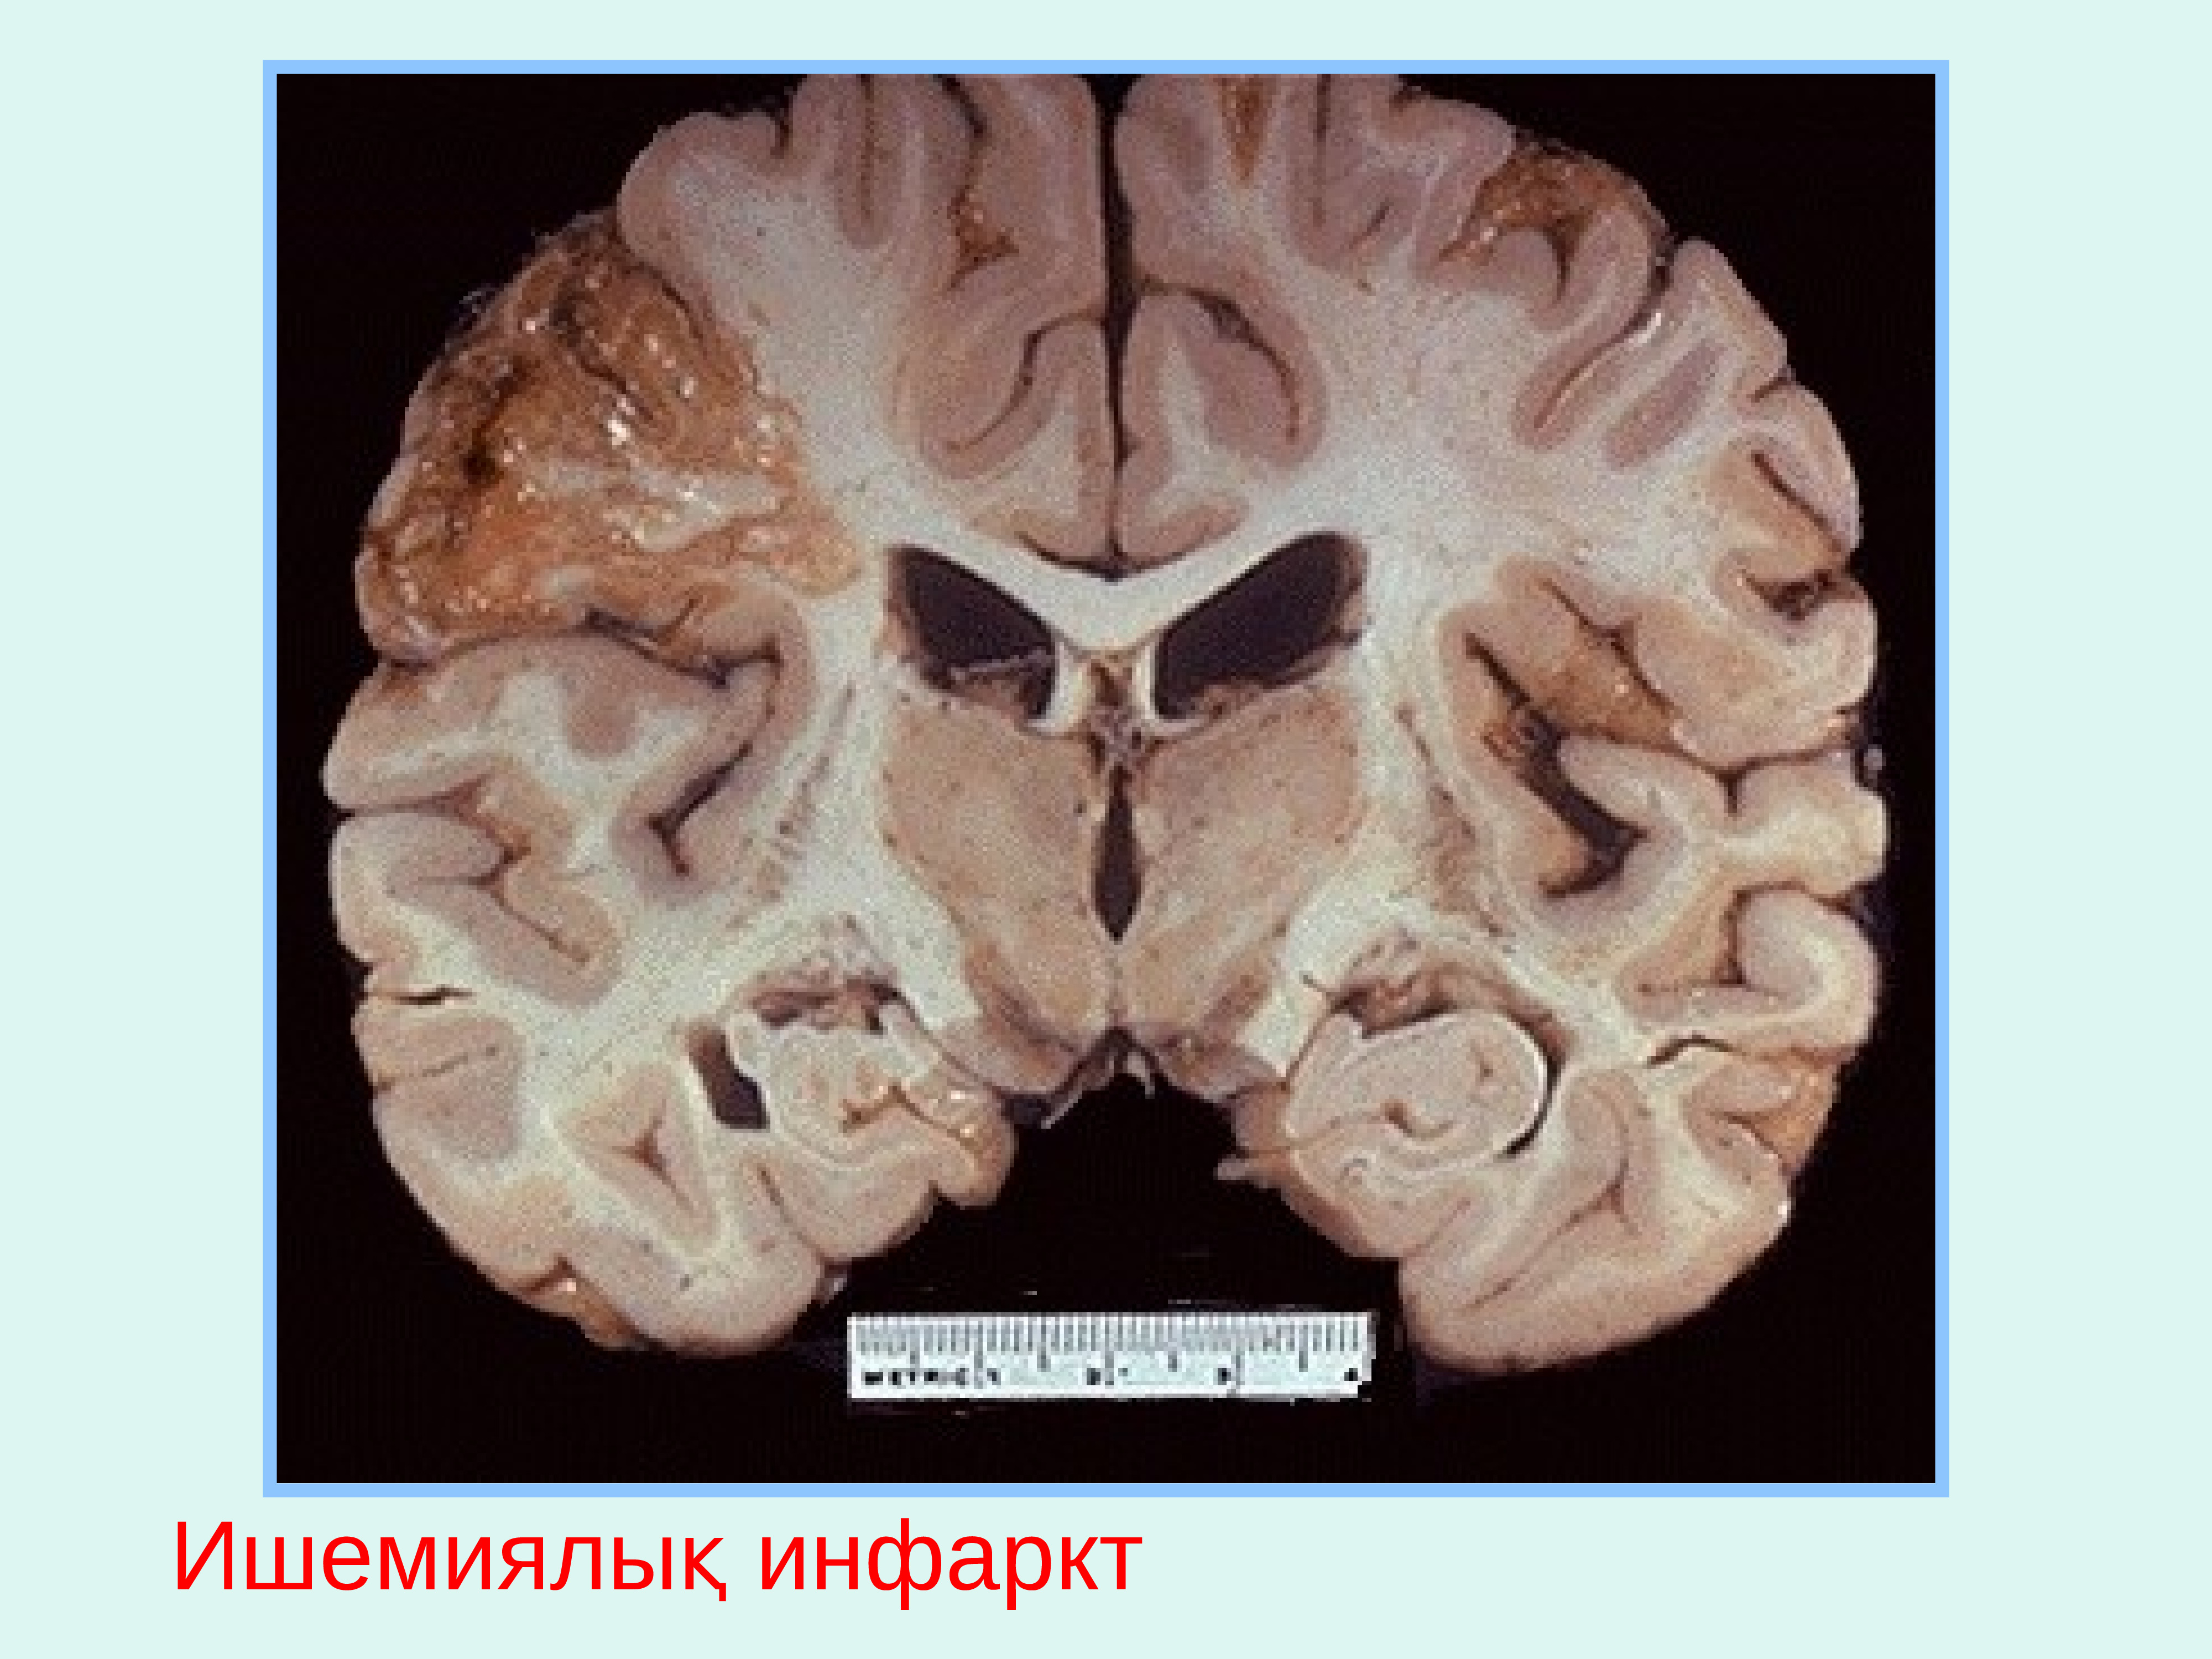 Диффузное поражение мозга. Ишемический инфаркт головного мозга макропрепарат. Колликвационный некроз головного мозга. Болезнь Виллизиева круга. Киста головного мозга макропрепарат.